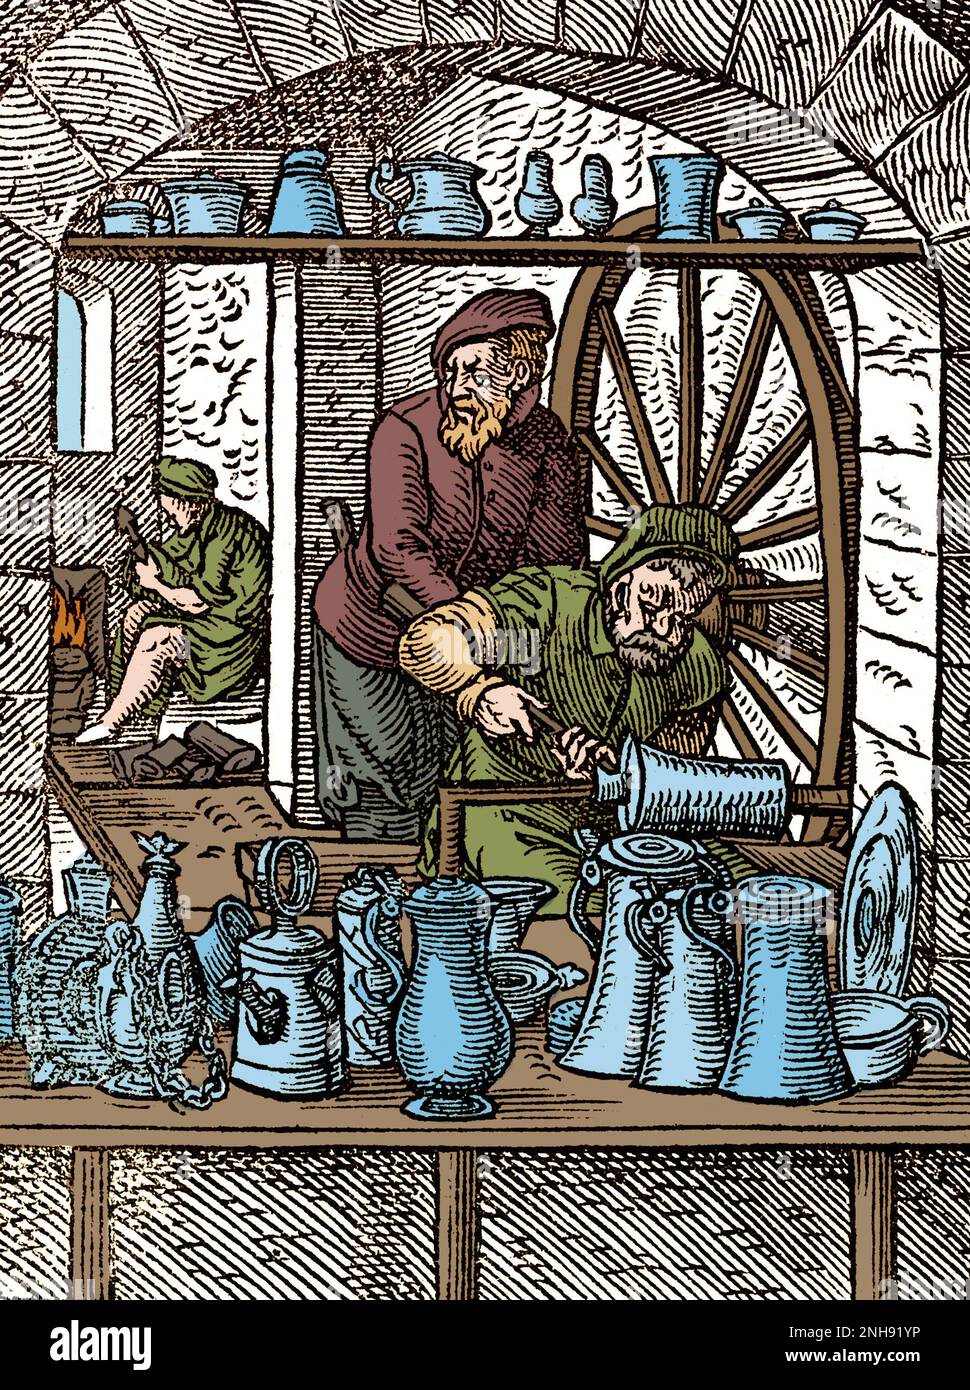 Zinngründer und Zinnmacher, die Kannen, Trinkgefäße und andere Gegenstände herstellen. Woodcut aus Jost Ammans Handelsbuch, 1568. Gefärbt. Stockfoto